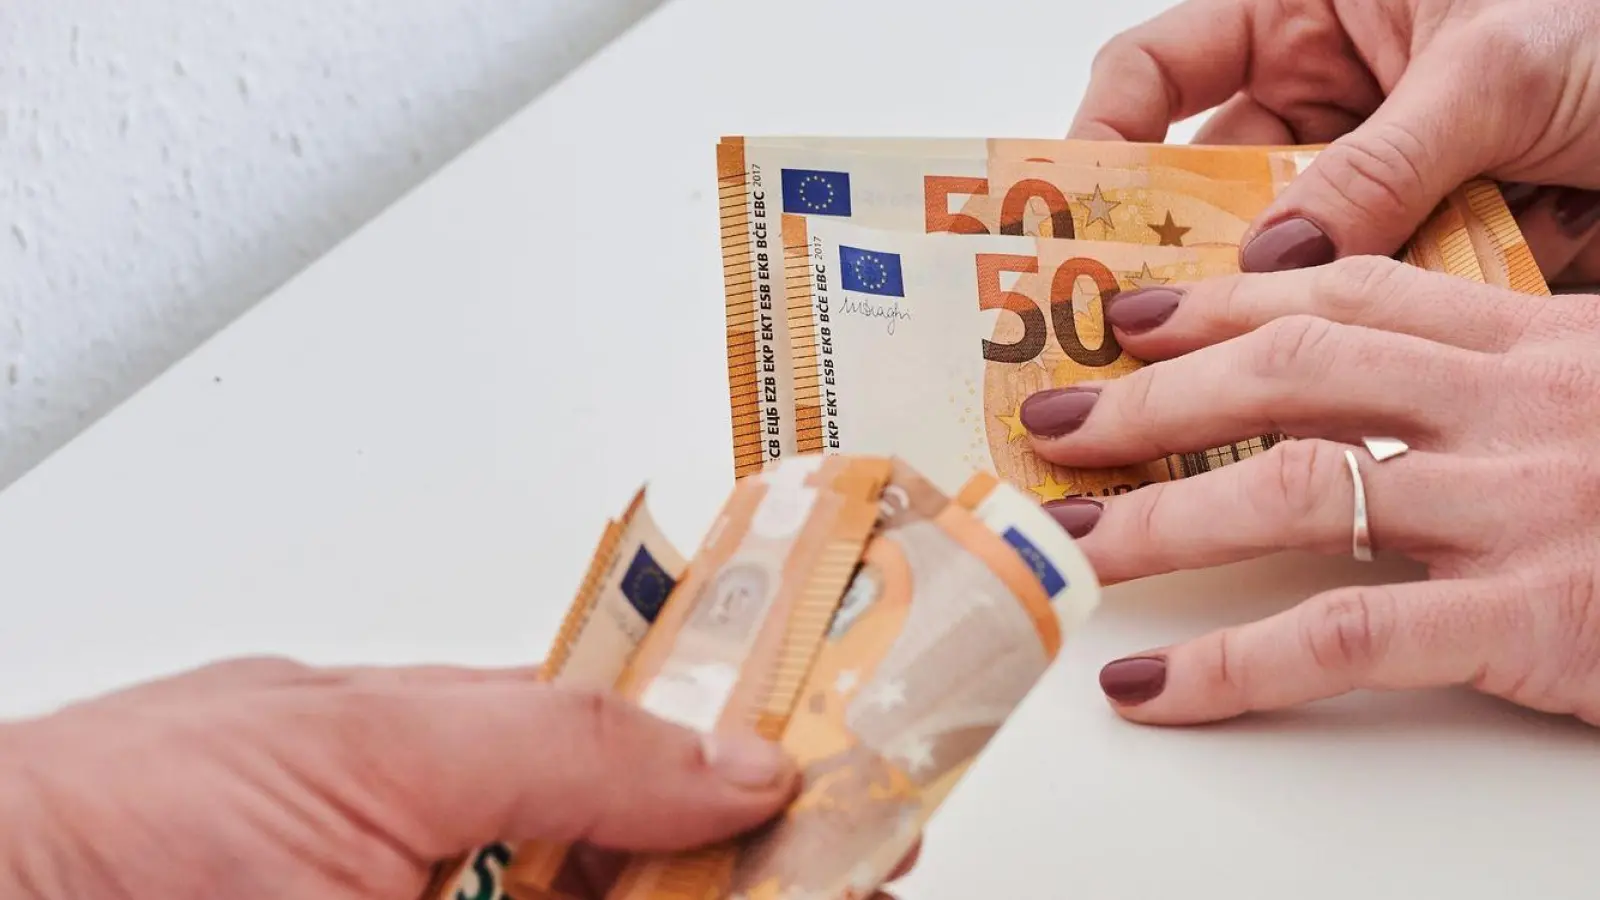 Eine Männerhand hält ein Bündel 50-Euro-Scheine, während eine Frauenhand nur wenige 50-Euro-Scheine hält. (Foto: Annette Riedl/dpa)